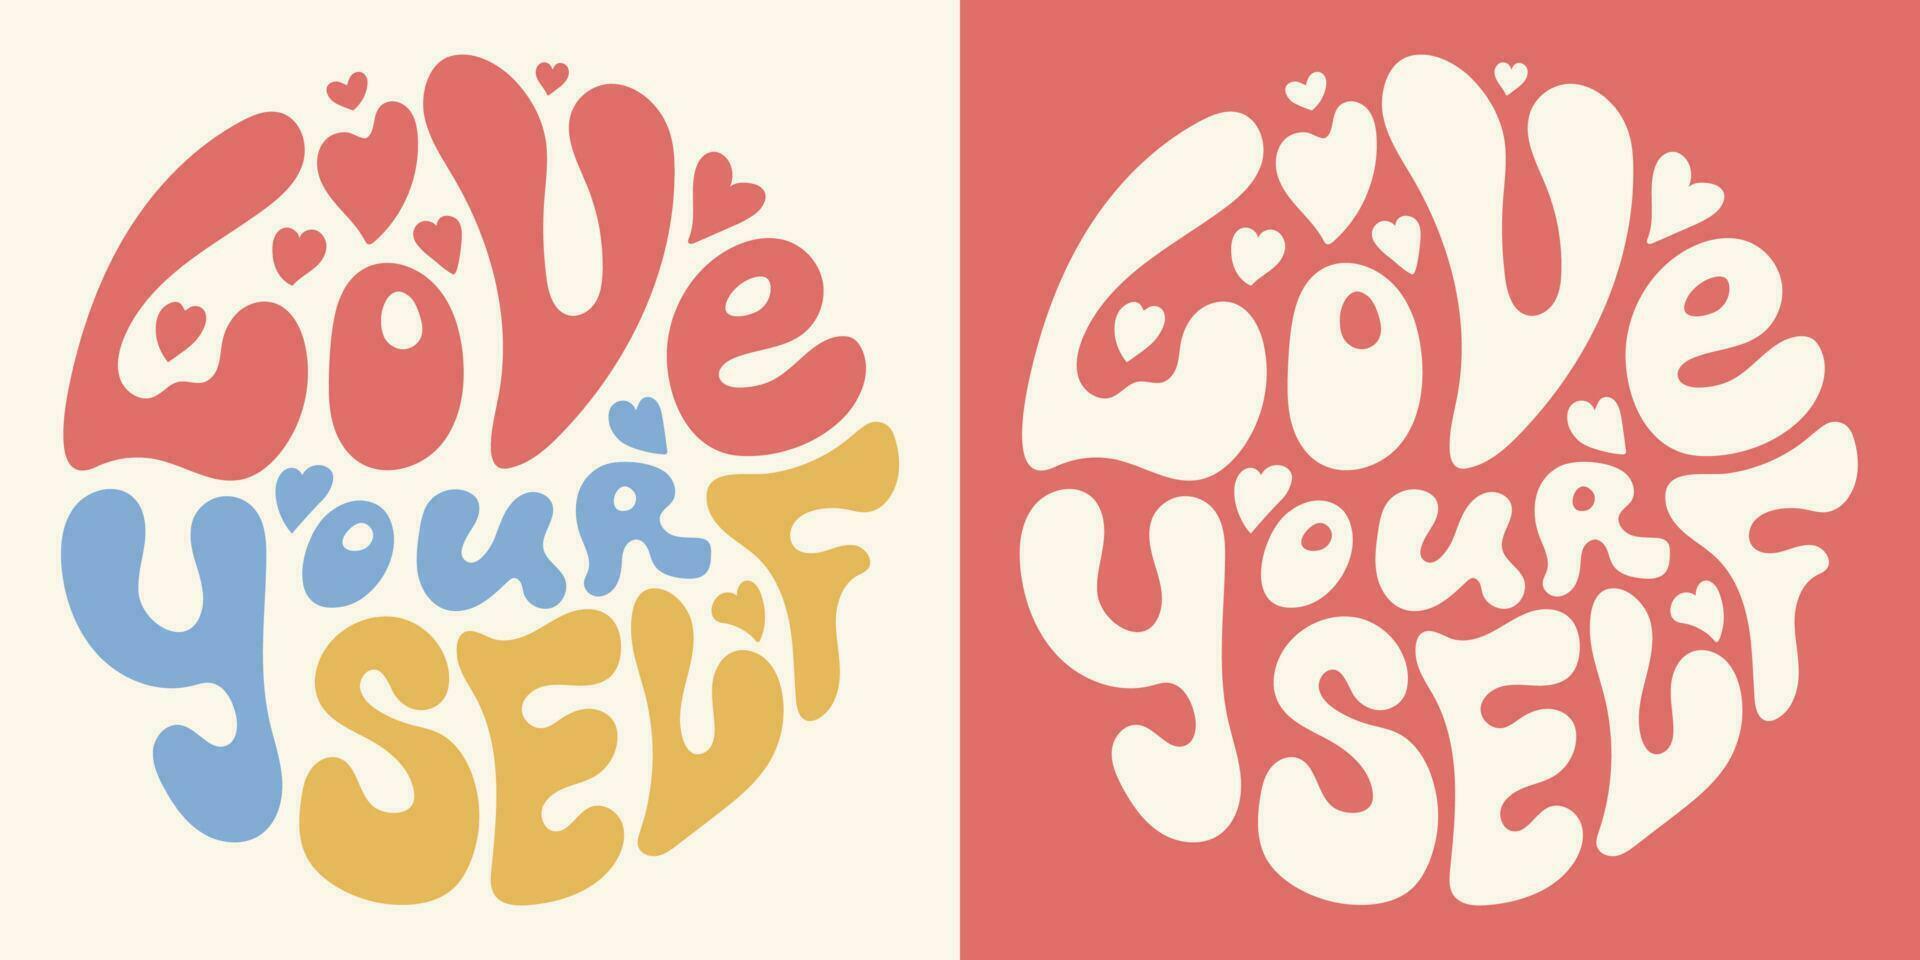 groovy hippie psicodélico letras amor você mesmo dentro forma do círculo dentro retro cores do vintage estilo do anos 60 anos 70. na moda rabisco inspiração impressão para poster, cartão, camiseta vetor